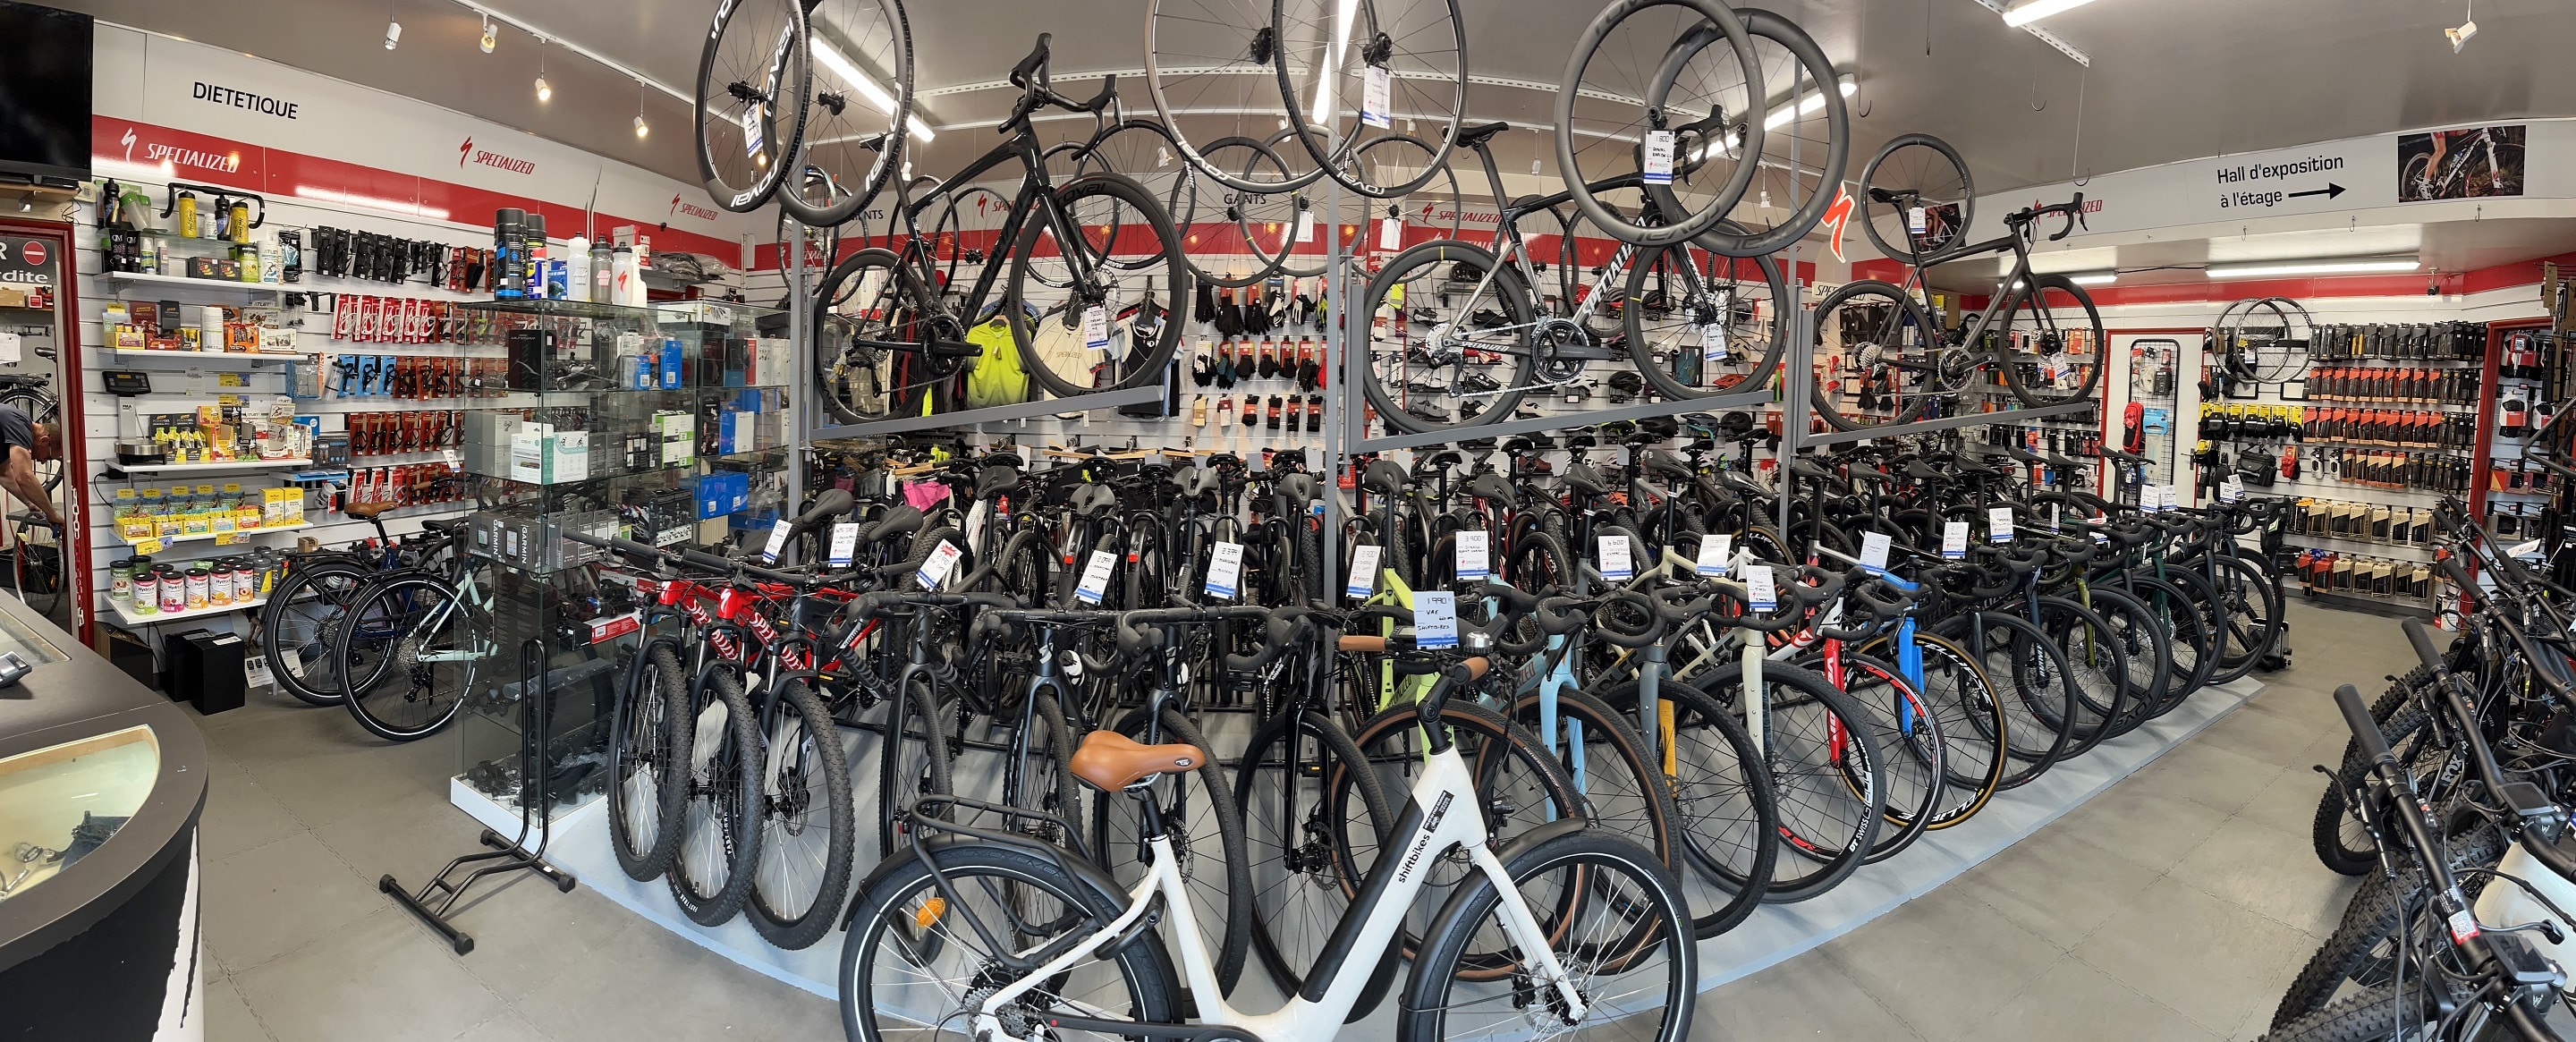 Une vue d'ensemble de la boutique Atelier du Cycle Rouennais